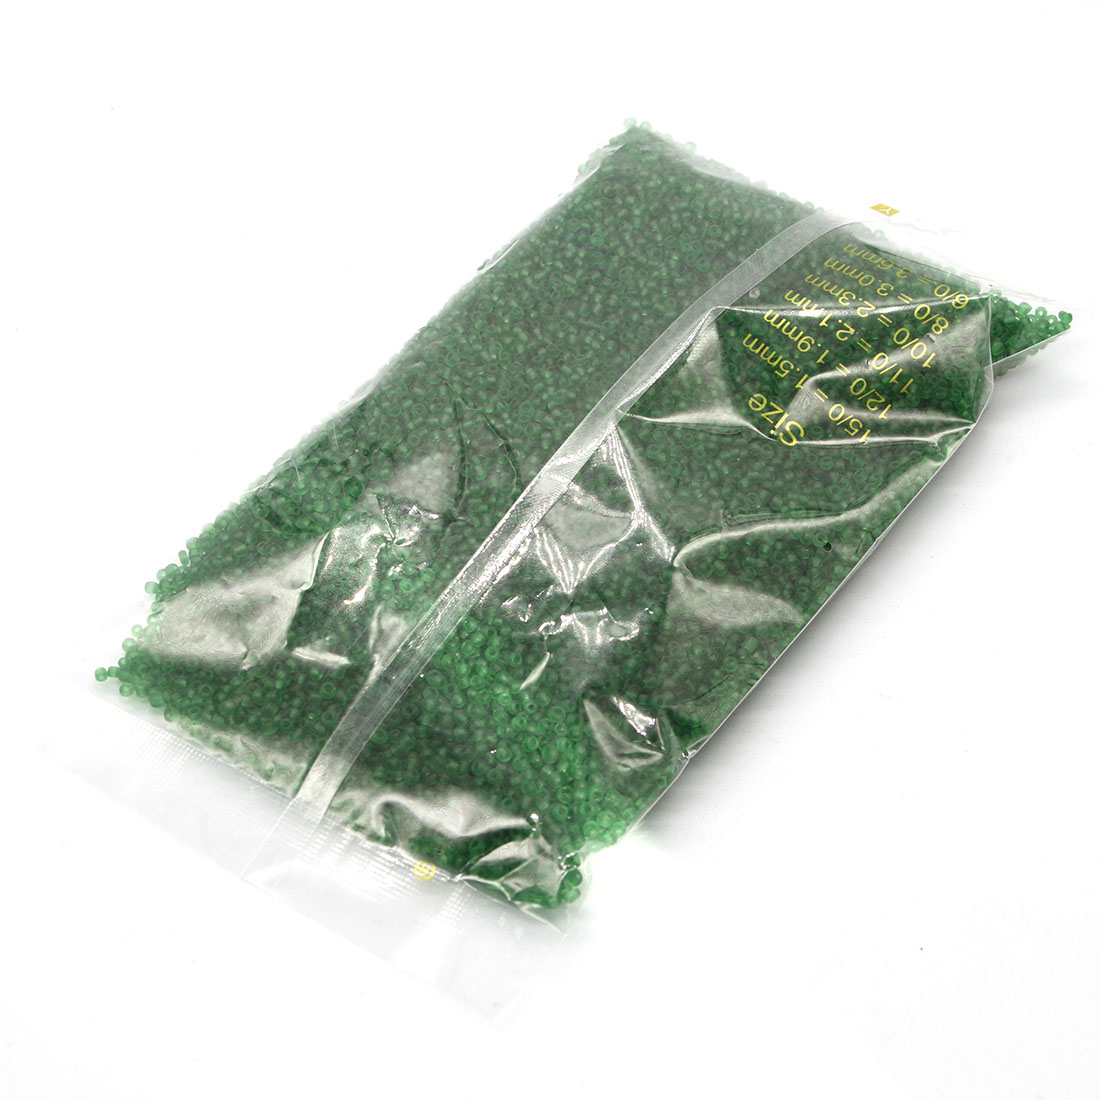 Grass green 3mm 10,000 packs